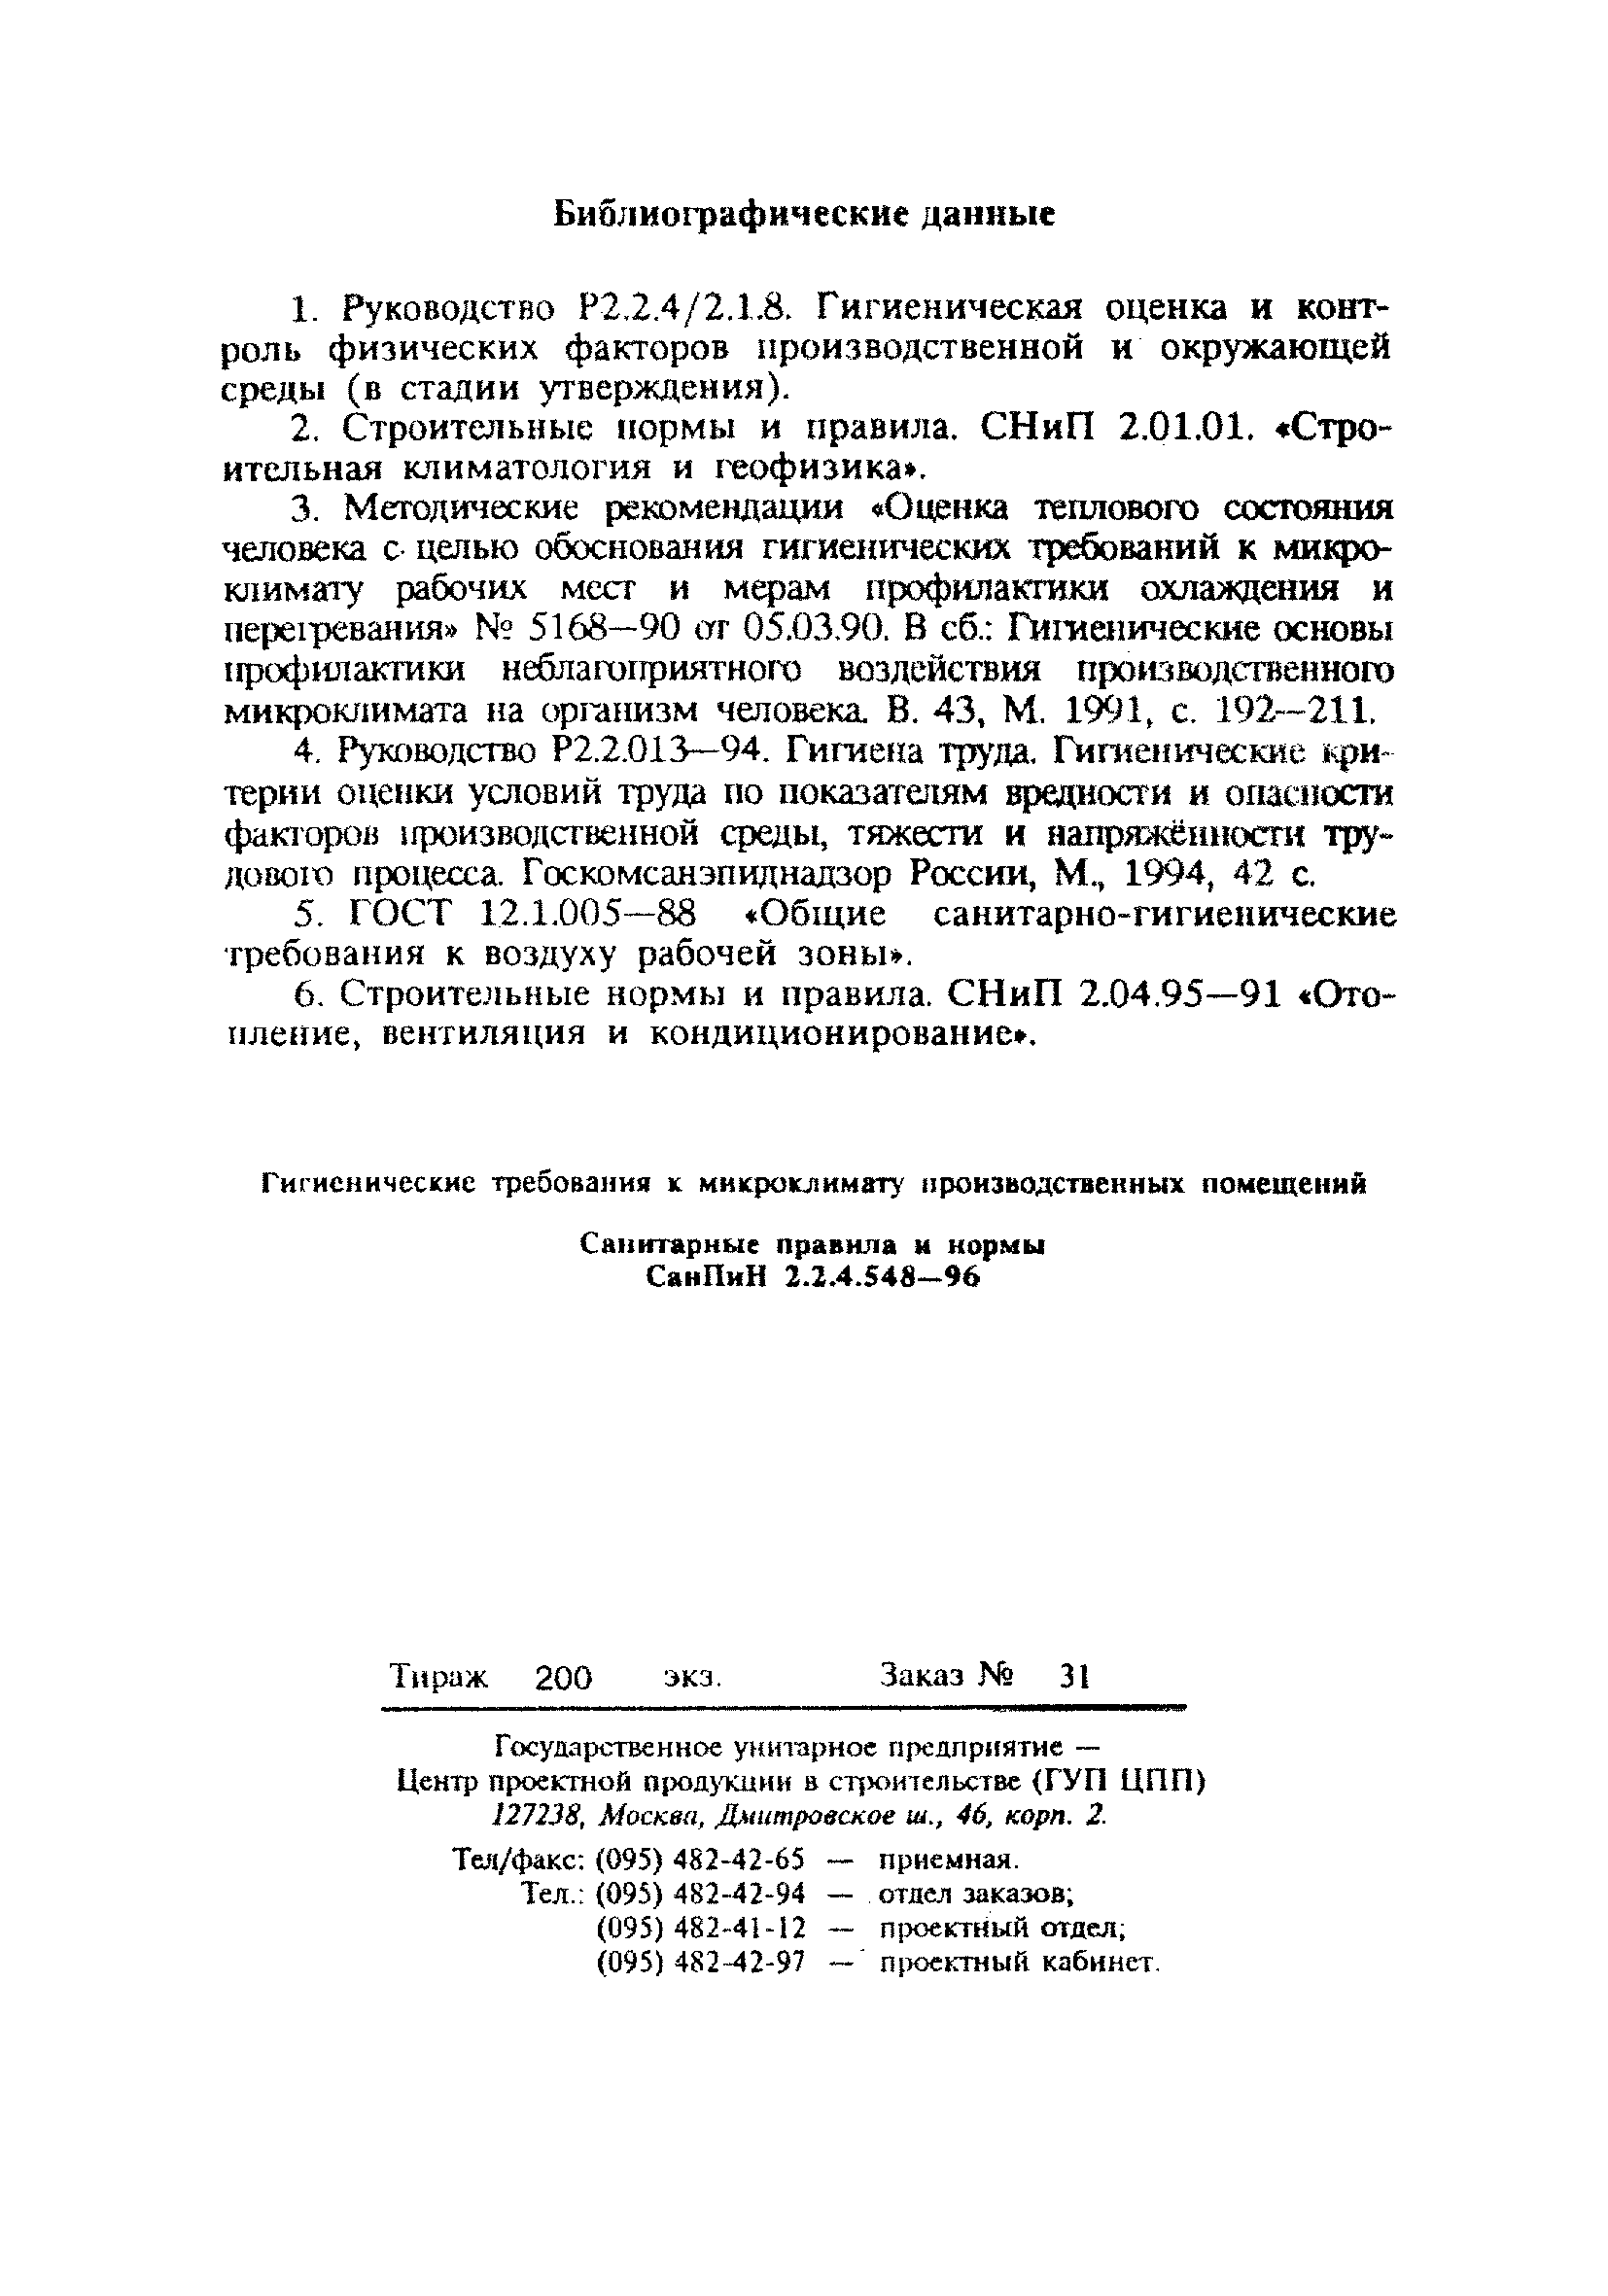 СанПиН 2.2.4.548-96